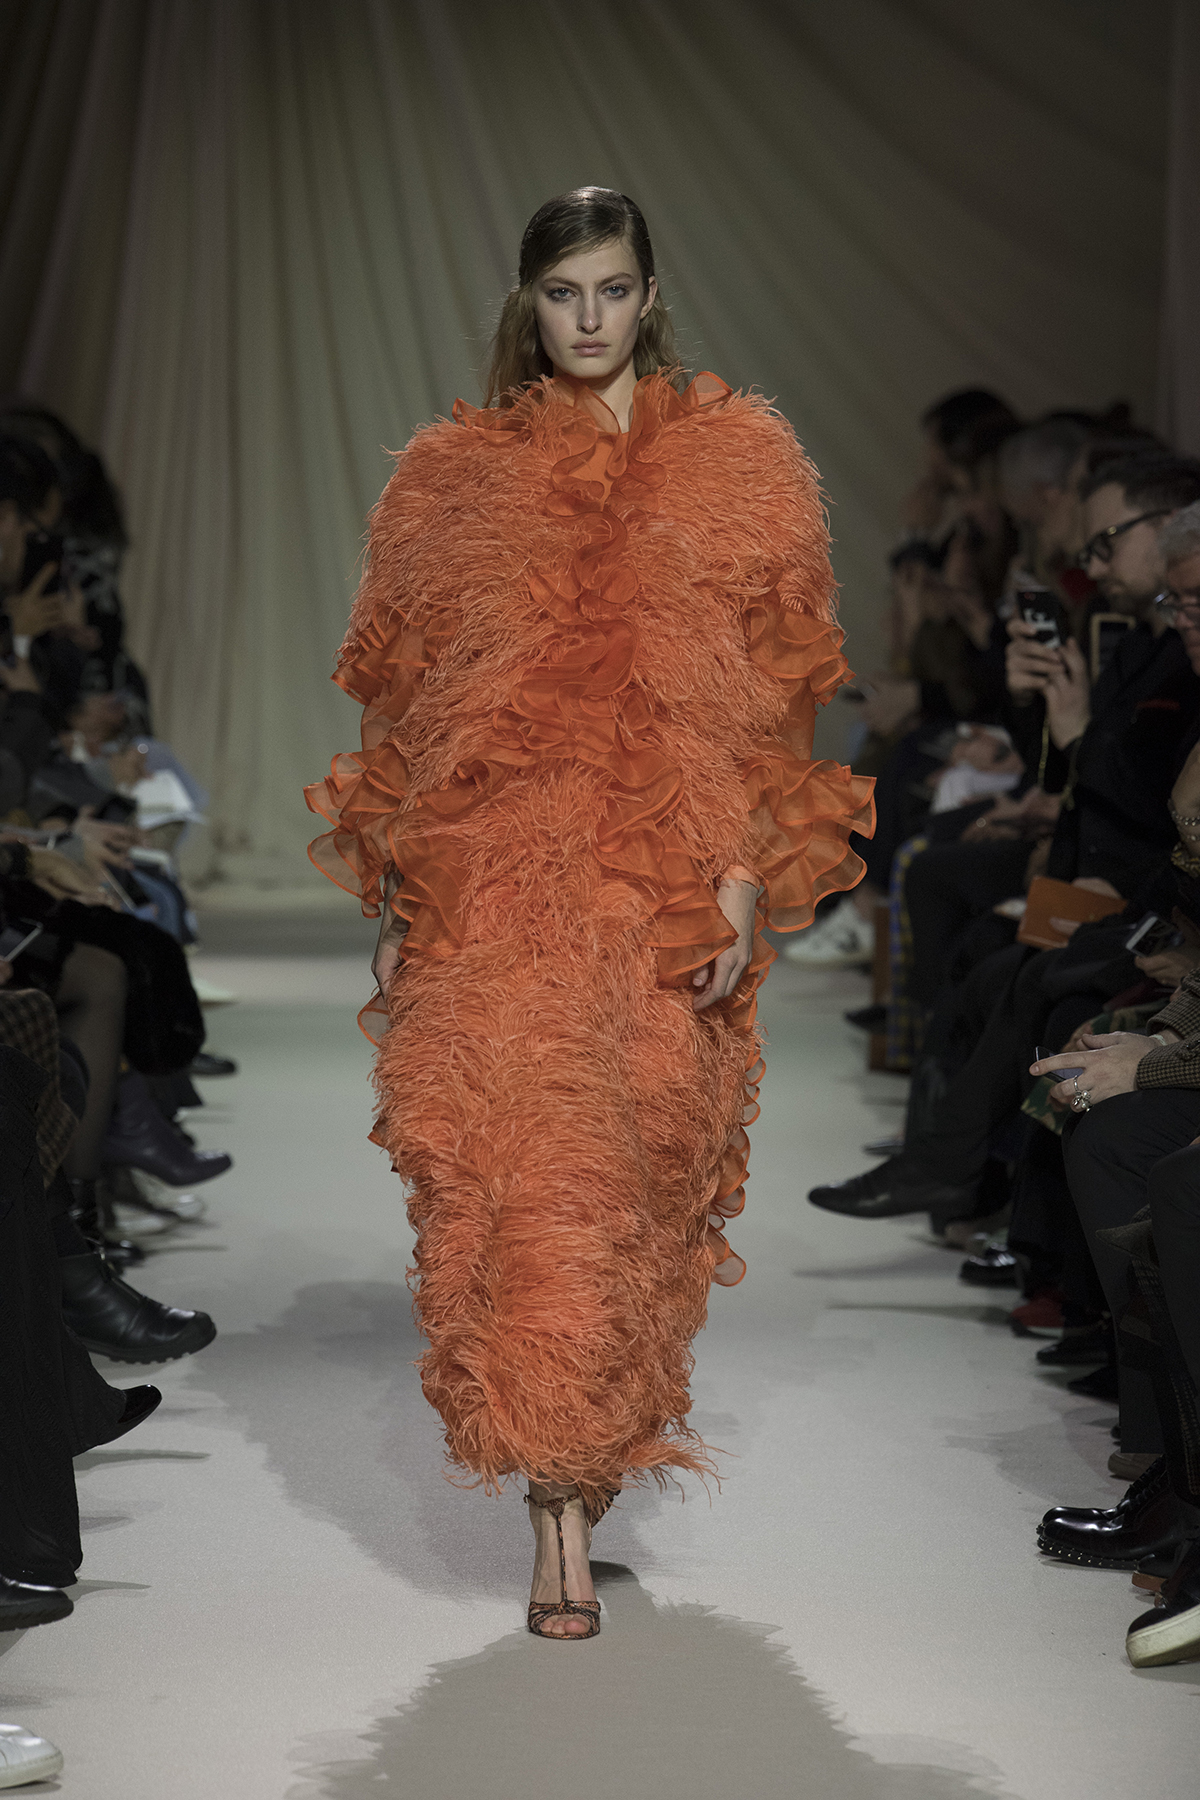 Model on catwalk wearing large orange coat